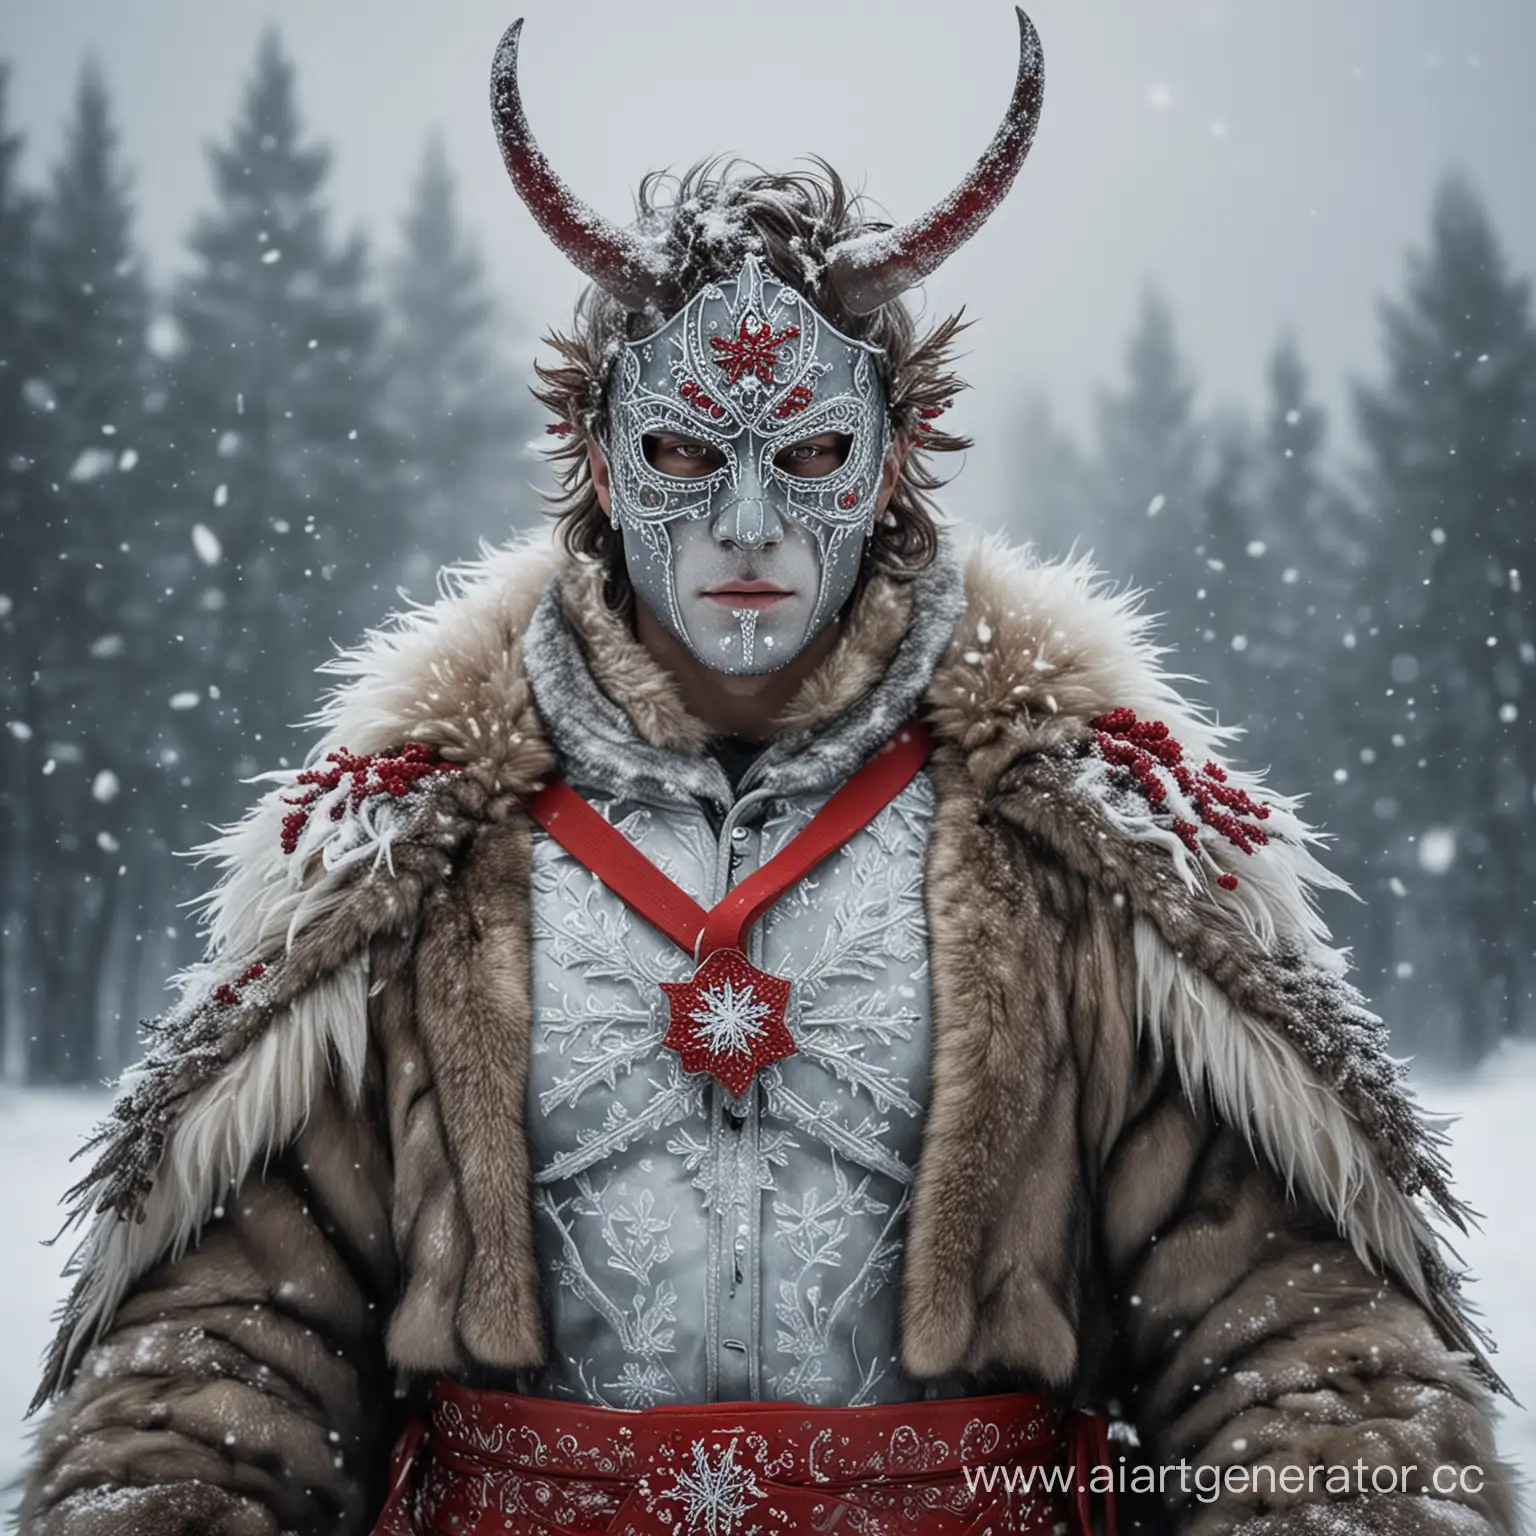 "Ледяной воин": персонаж одет в меховую шубу, украшенными снежинками. На его голове - маска из льда, из которой выходят ледяные рога. Вокруг пояса персонажа завязан красный пояс. мужчина